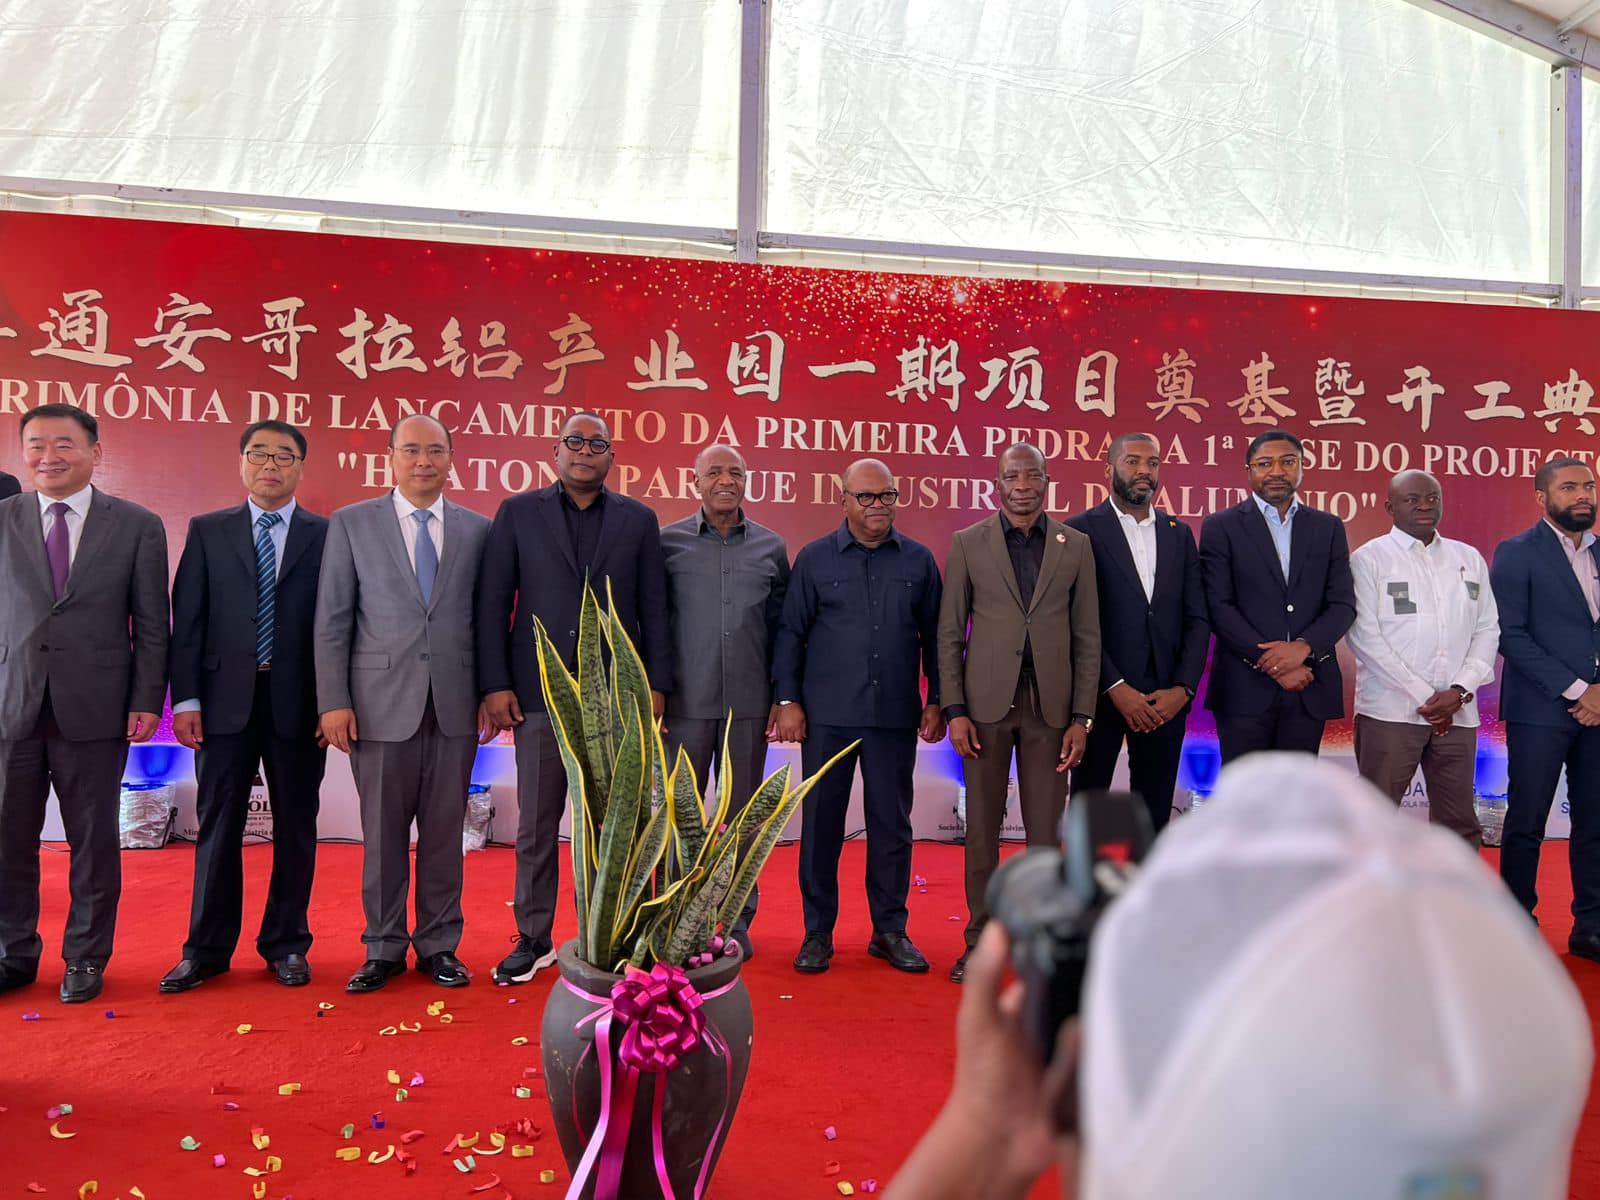 Presidente da Câmara de comércio Angola-China prestigia o lançamento da primeira pedra do complexo industrial da empresa WUTONG GROUP